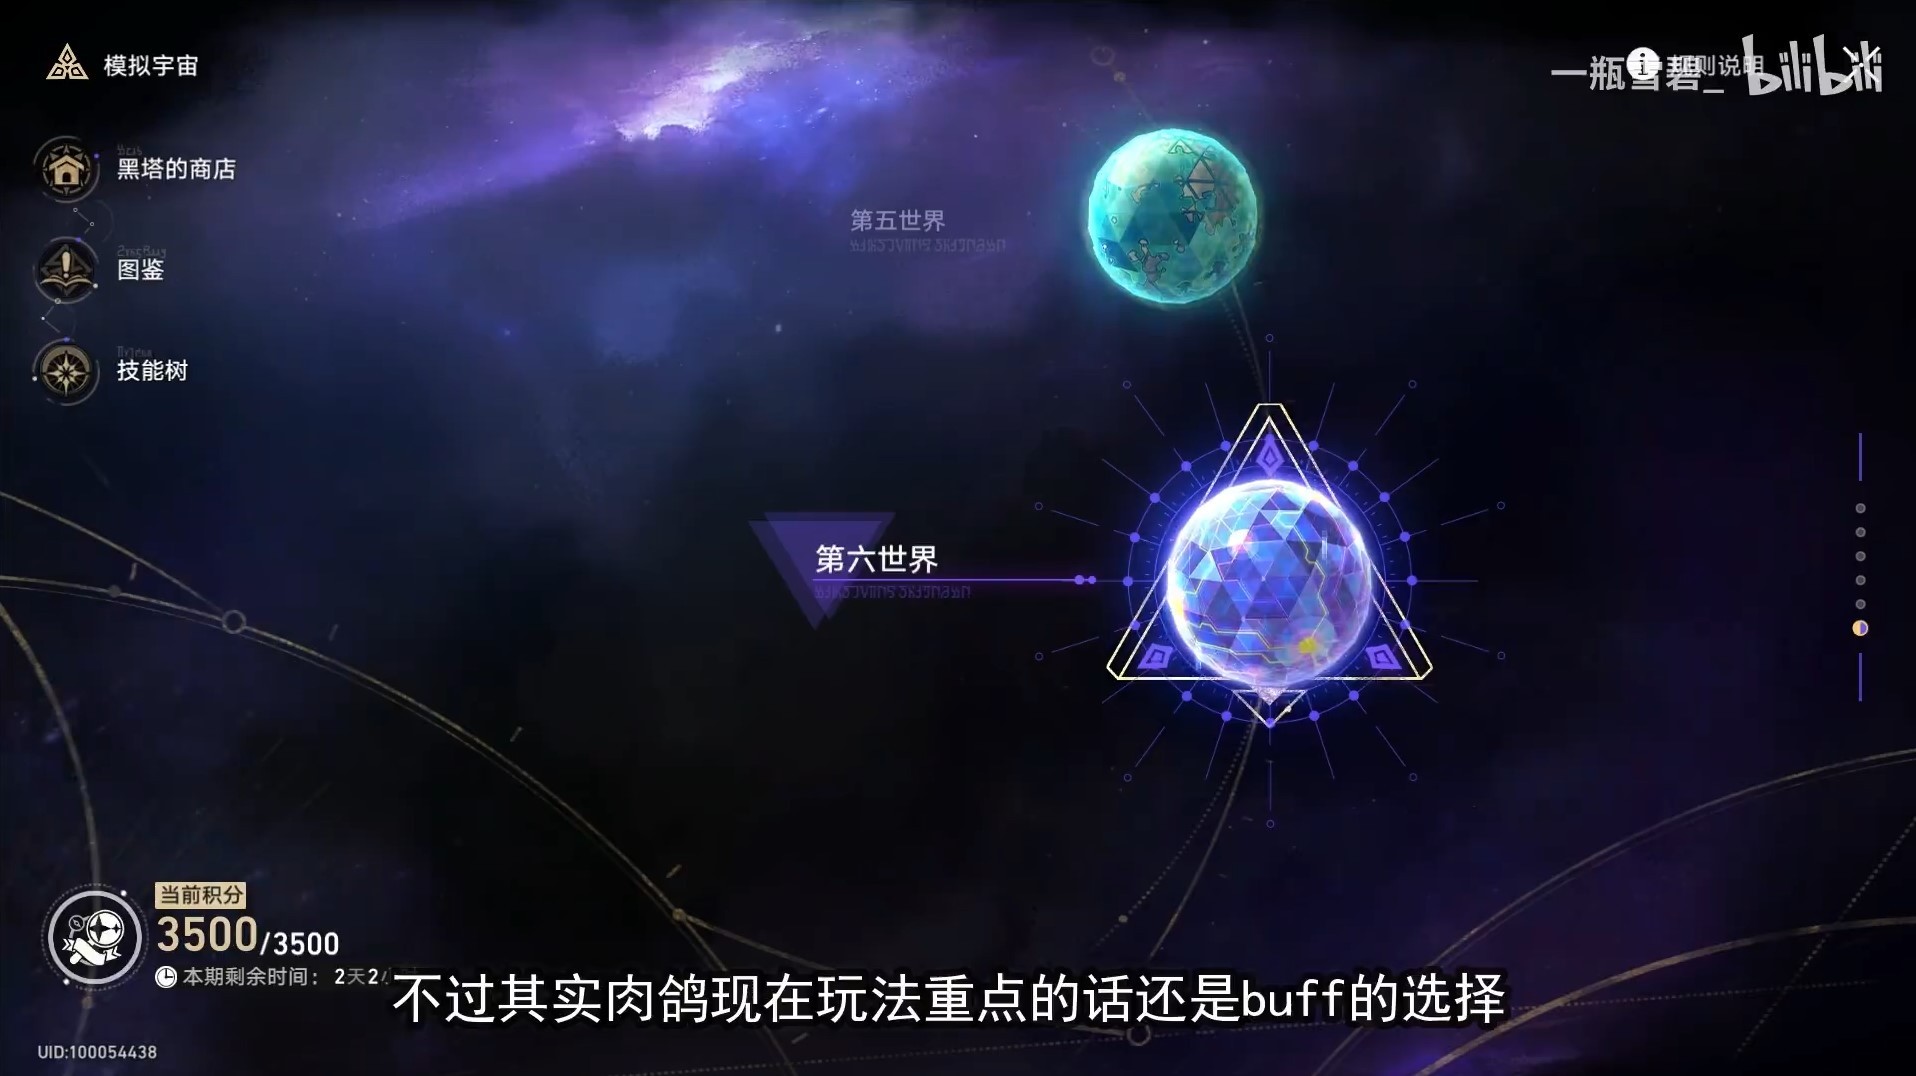 《崩坏星穹铁道》模拟宇宙各流派通关合集 BUFF选择与角色玩法讲解_观前提示